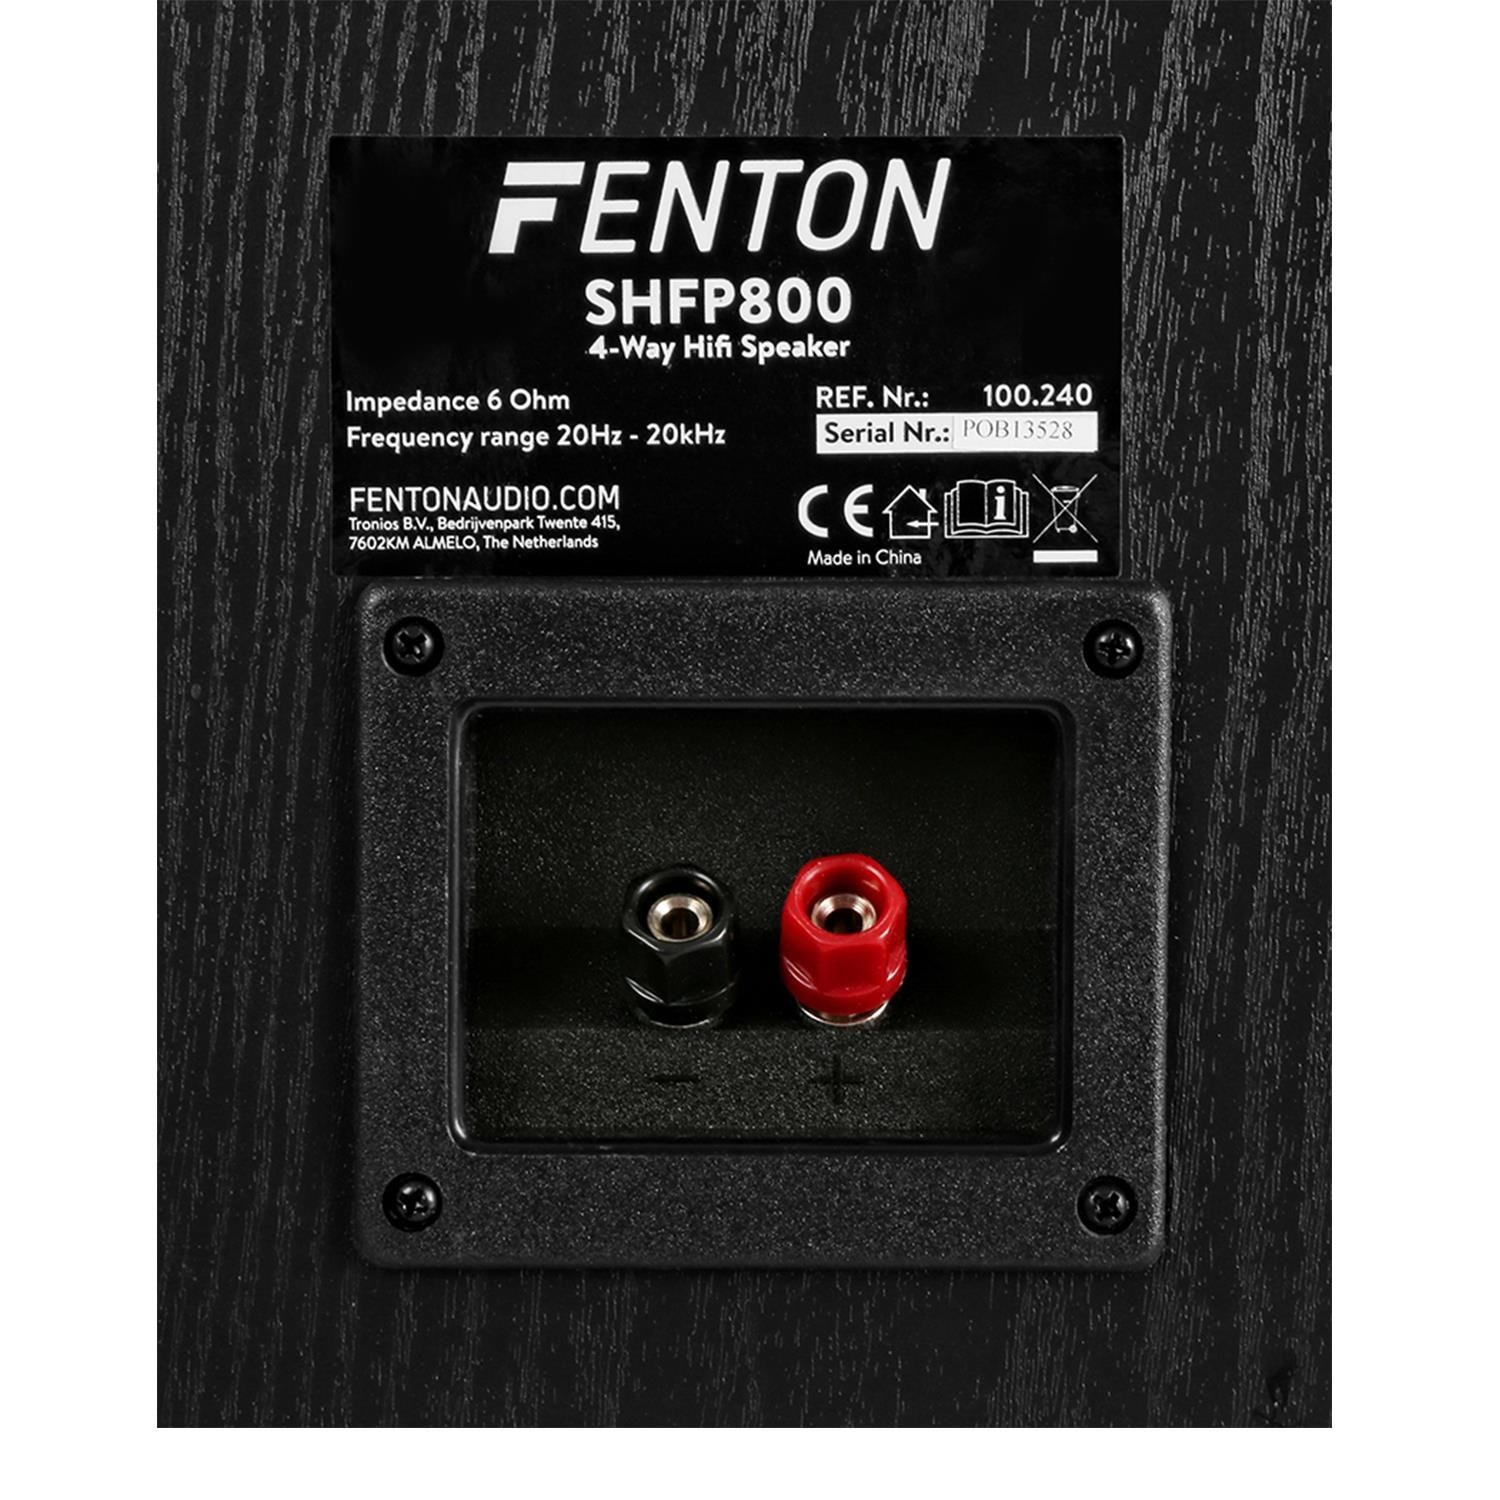 Enceinte 4 voies Fenton SHFP800 Enceinte Colonne Hifi 20Hz à 20 kHz Idéal Home Cinéma ou Hifi Enceinte Colonne Home Cinéma Haute-Fidélité 6 Ohm 700 Watts Restitution sonore excellente 